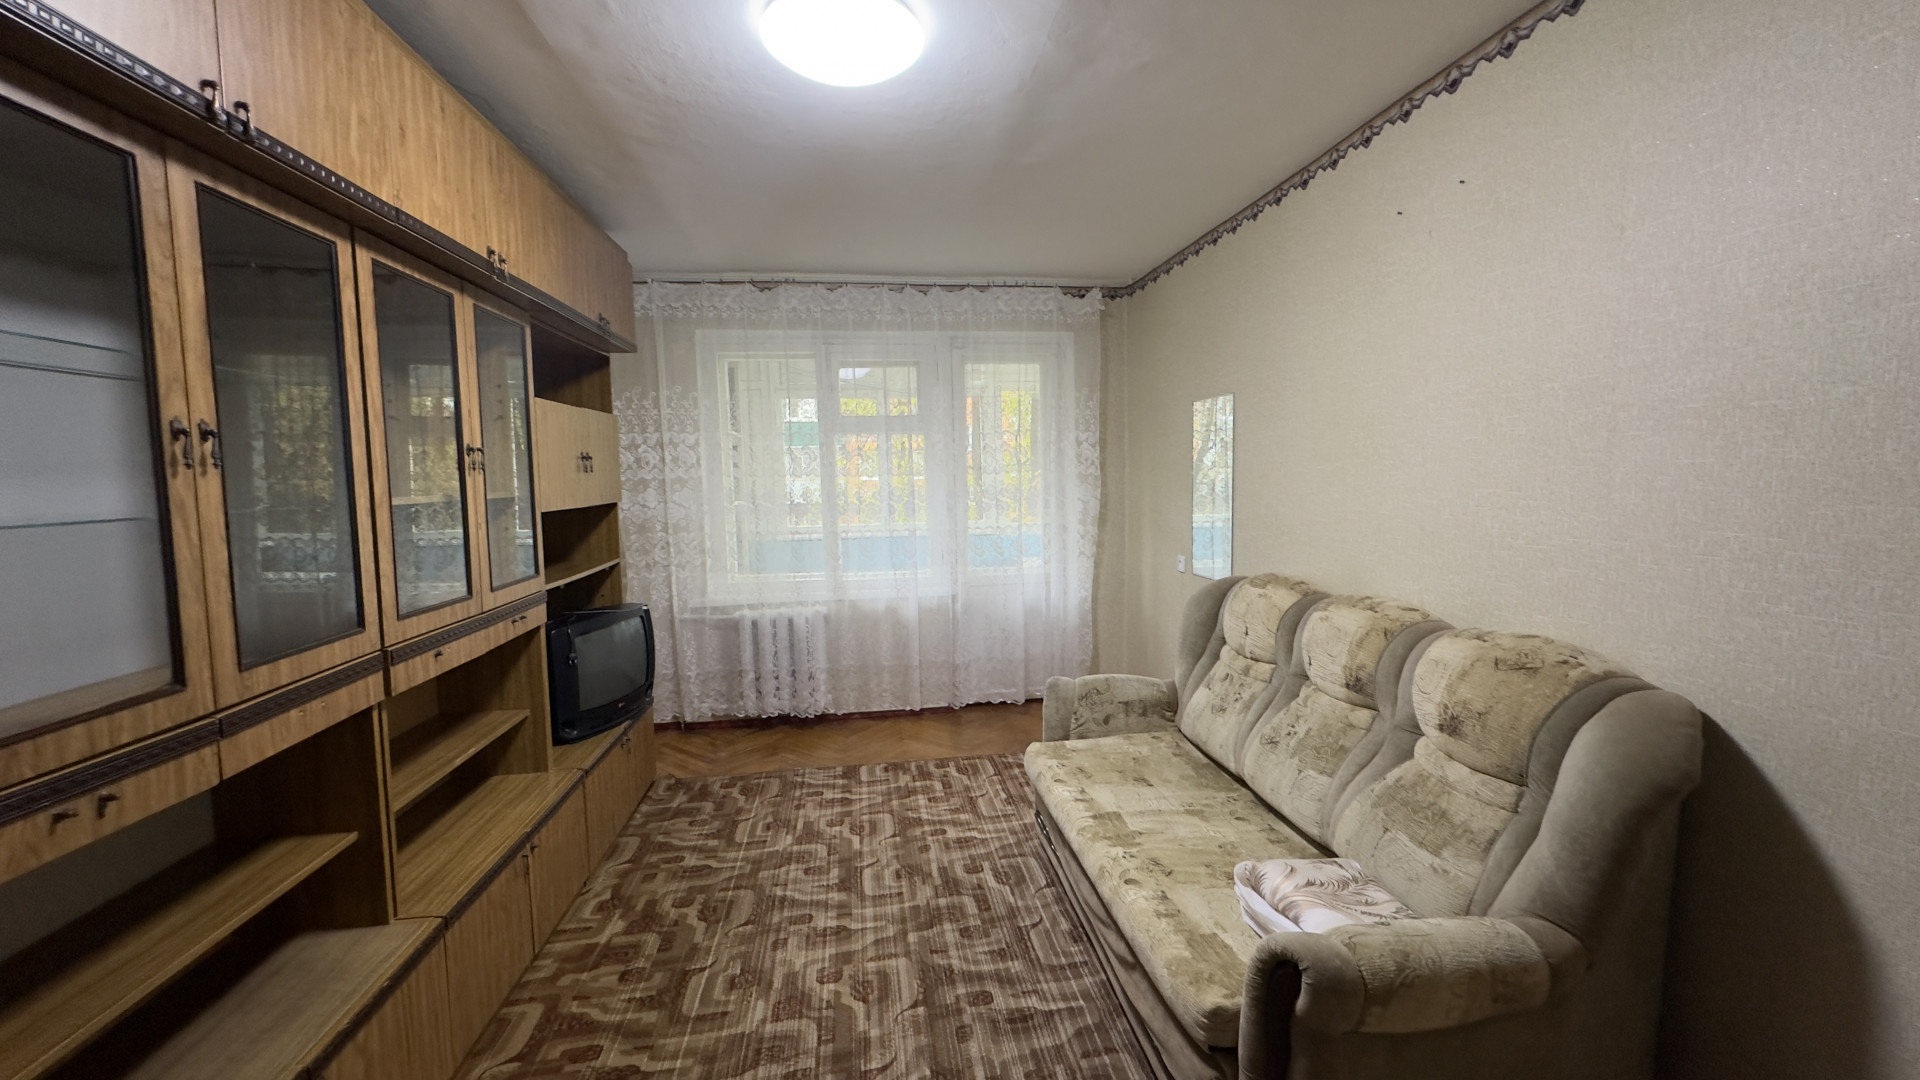 Квартира 1 комнатная в Майкоп г. район Черемушки р-н